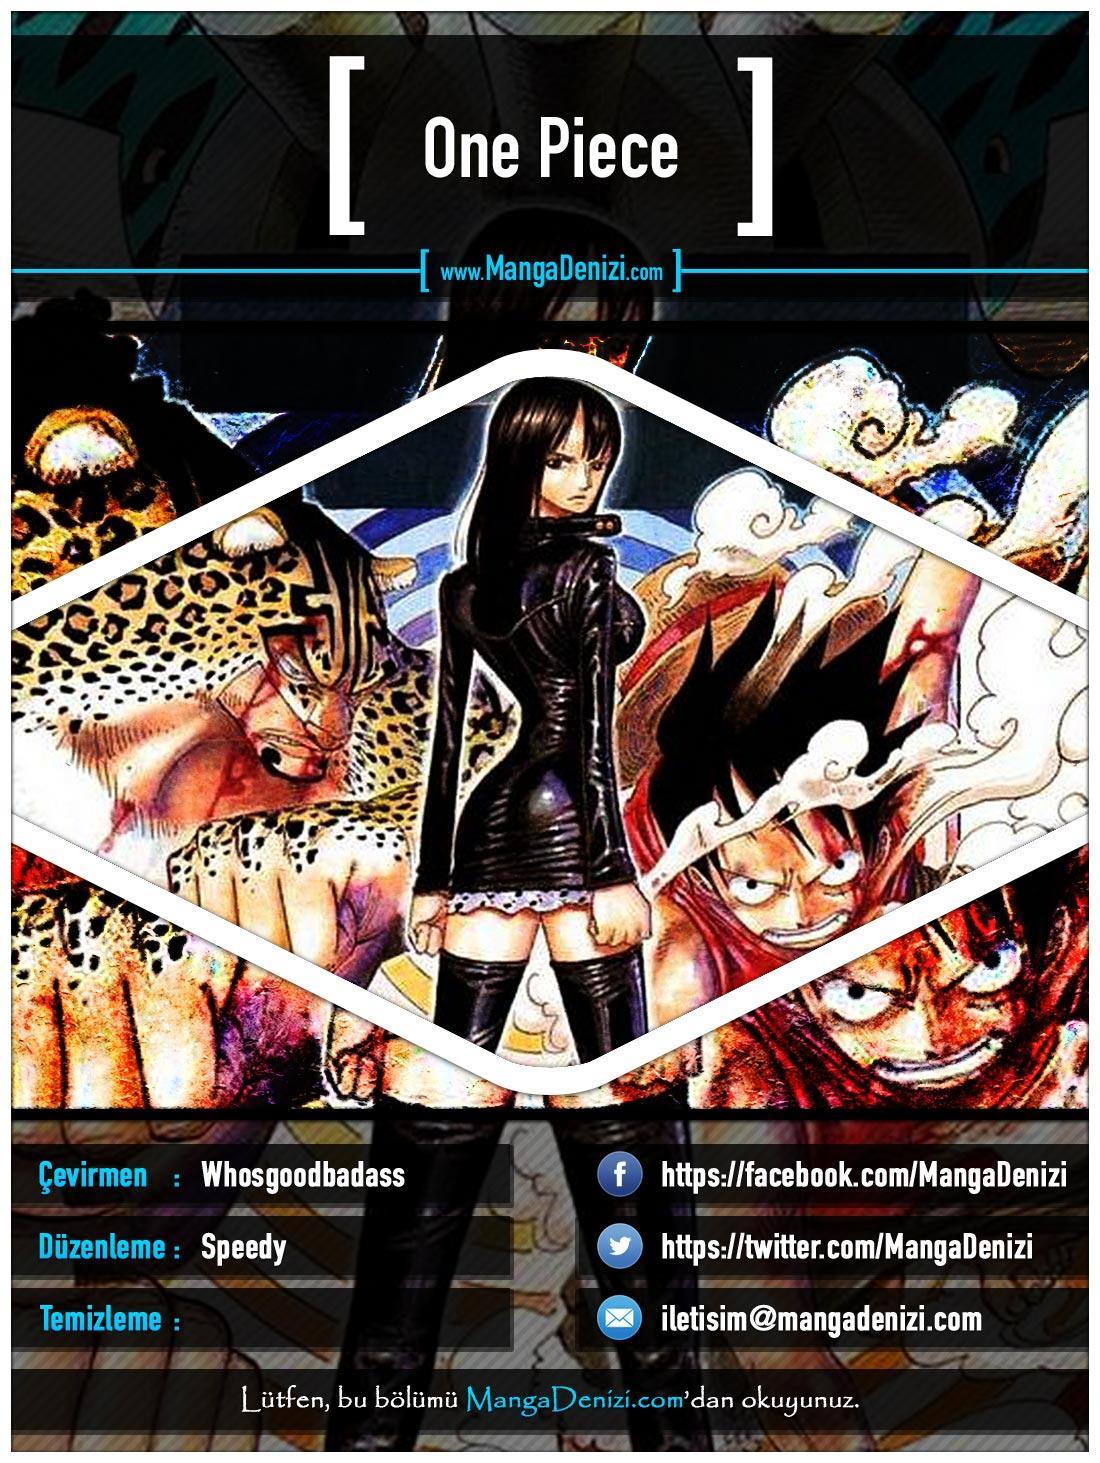 One Piece [Renkli] mangasının 0399 bölümünün 1. sayfasını okuyorsunuz.